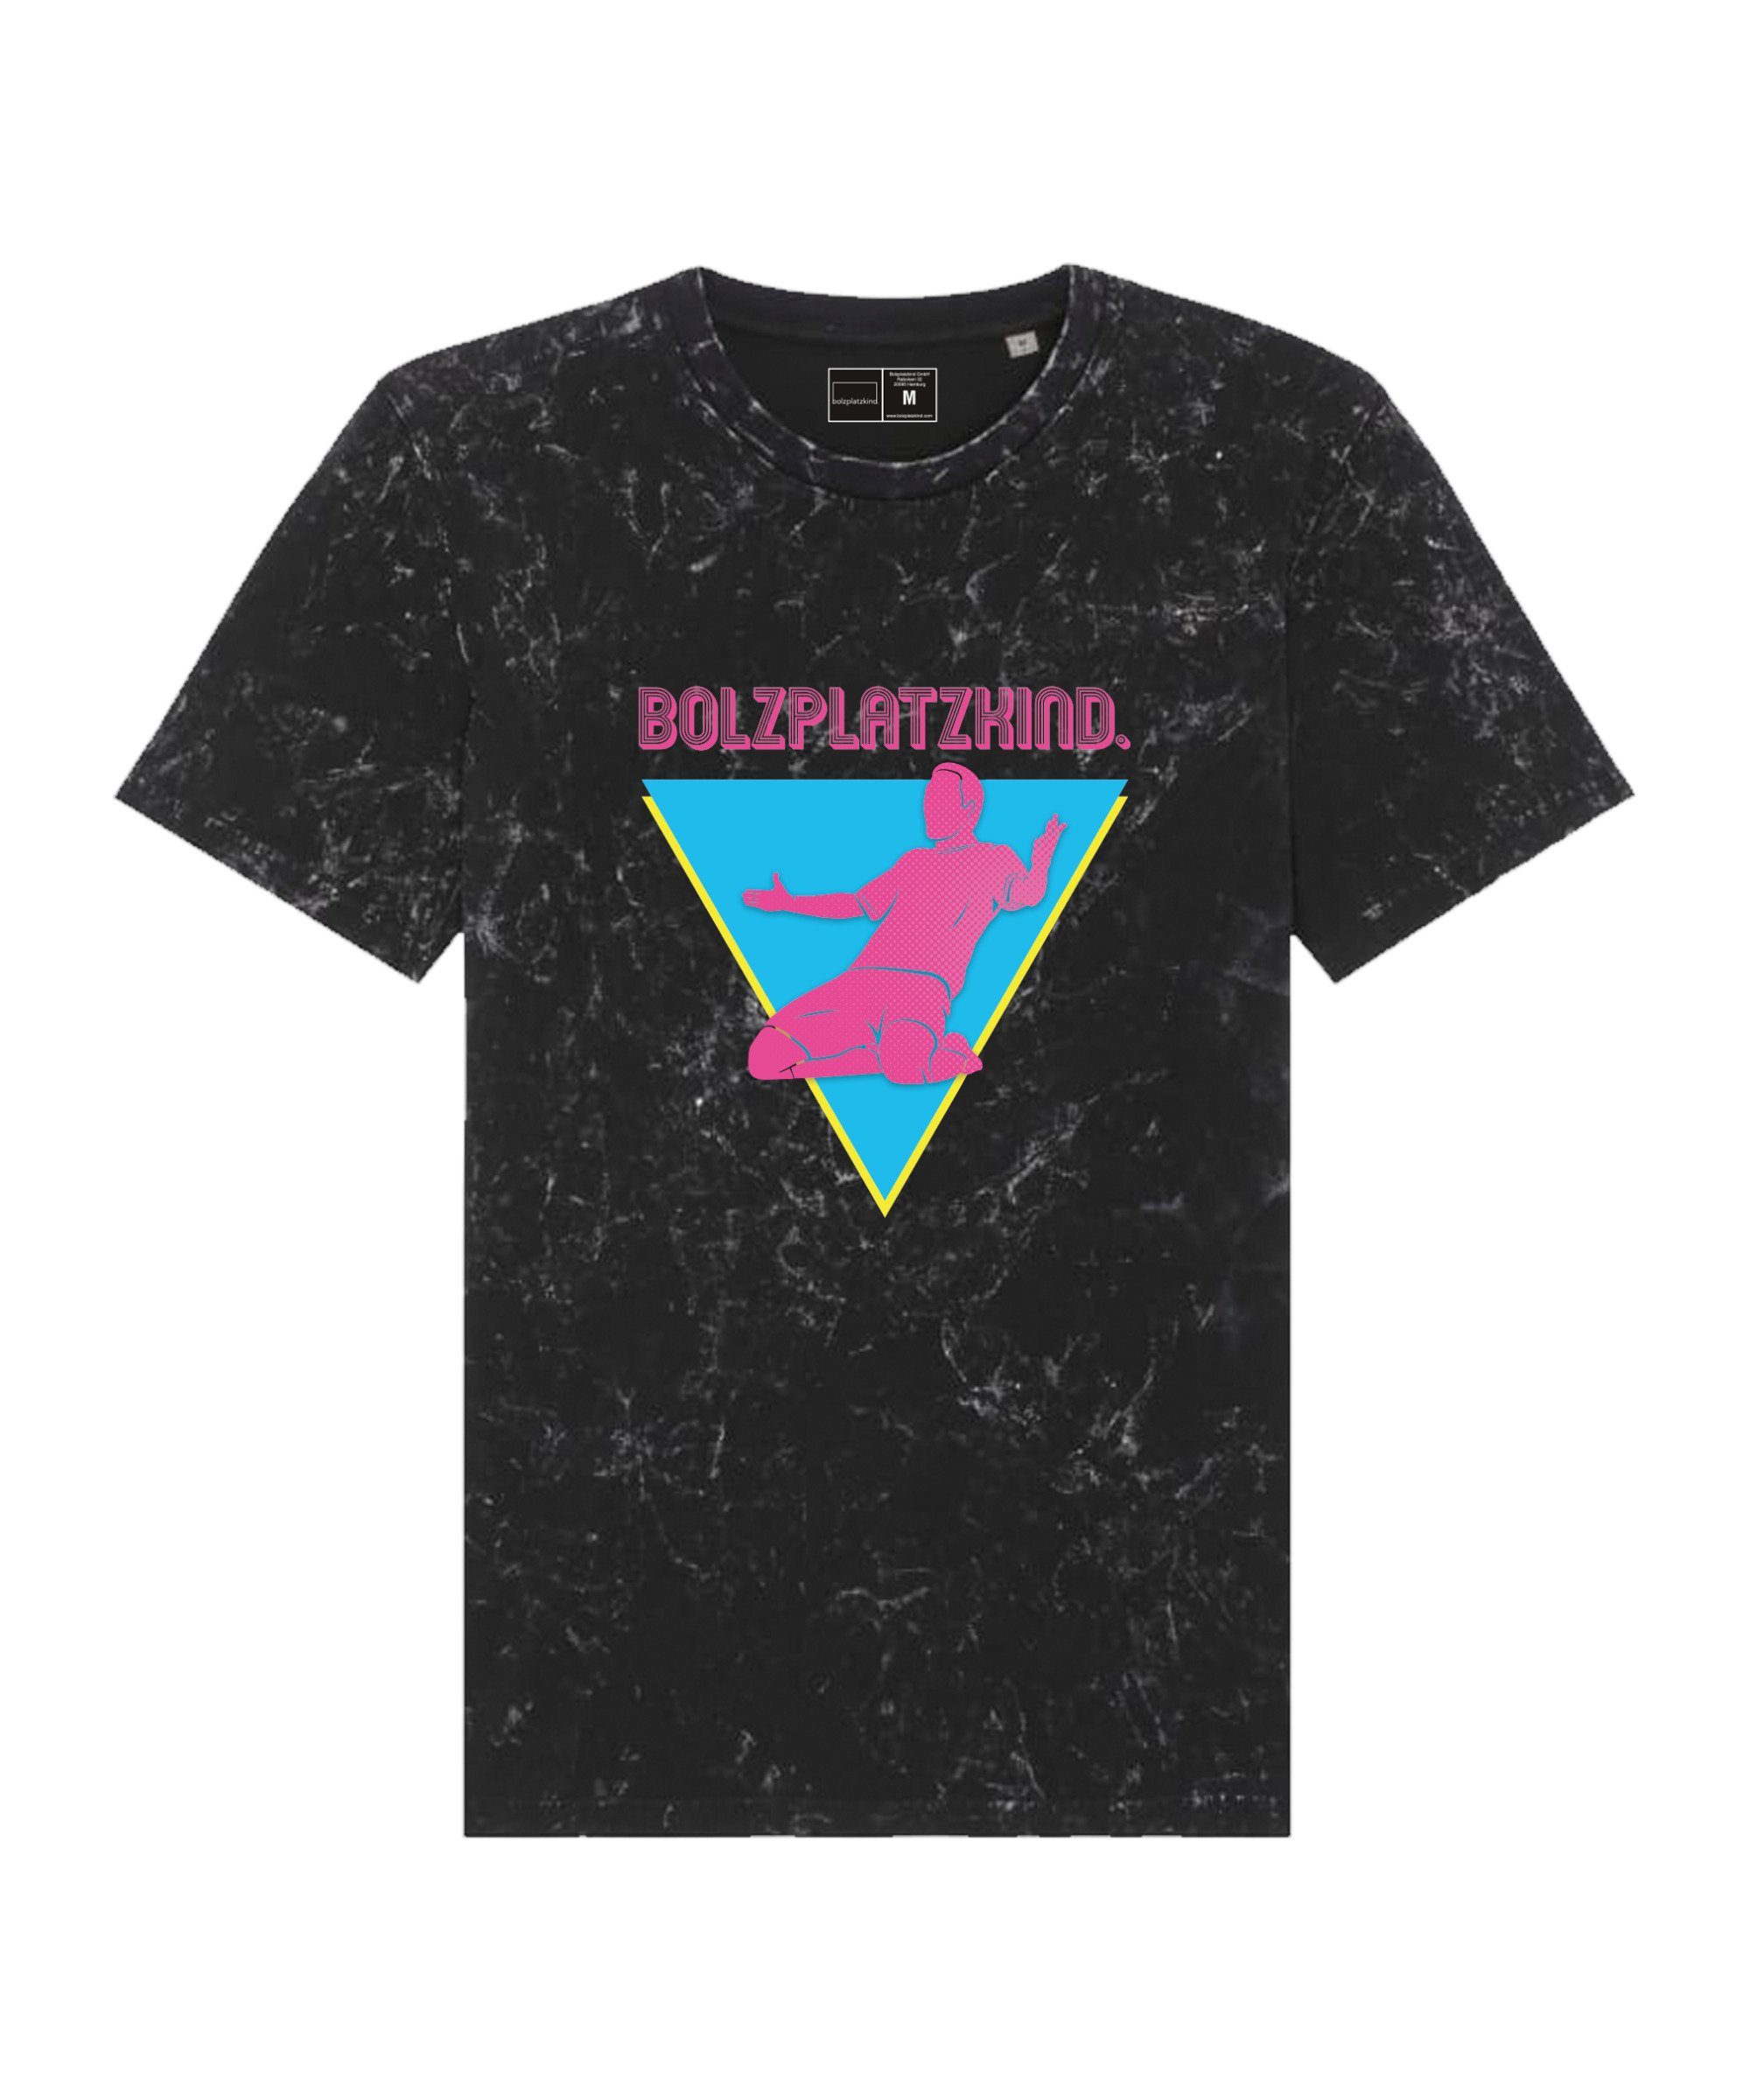 schwarzpinkblau T-Shirt T-Shirt Straddle "80er Jahre" default Bolzplatzkind